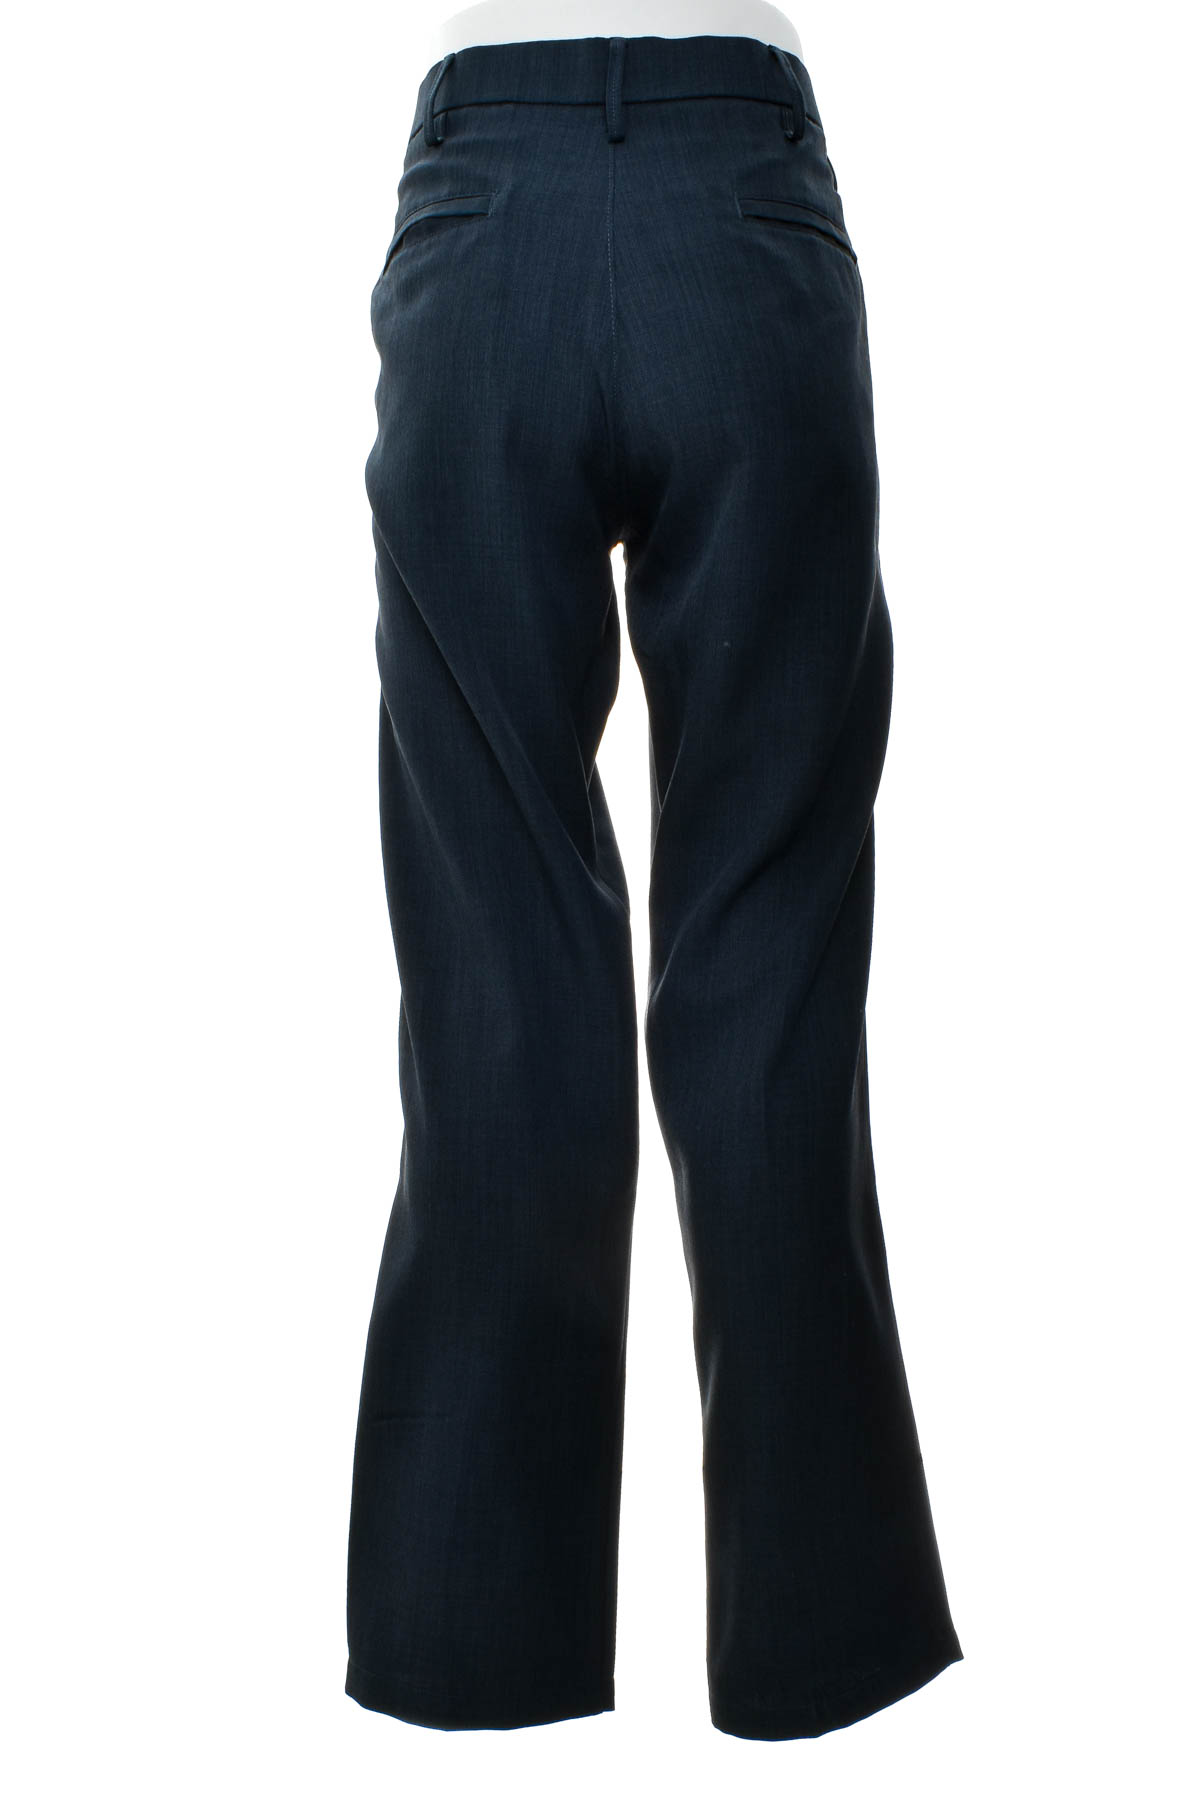 Men's trousers - HAGGAR - 1